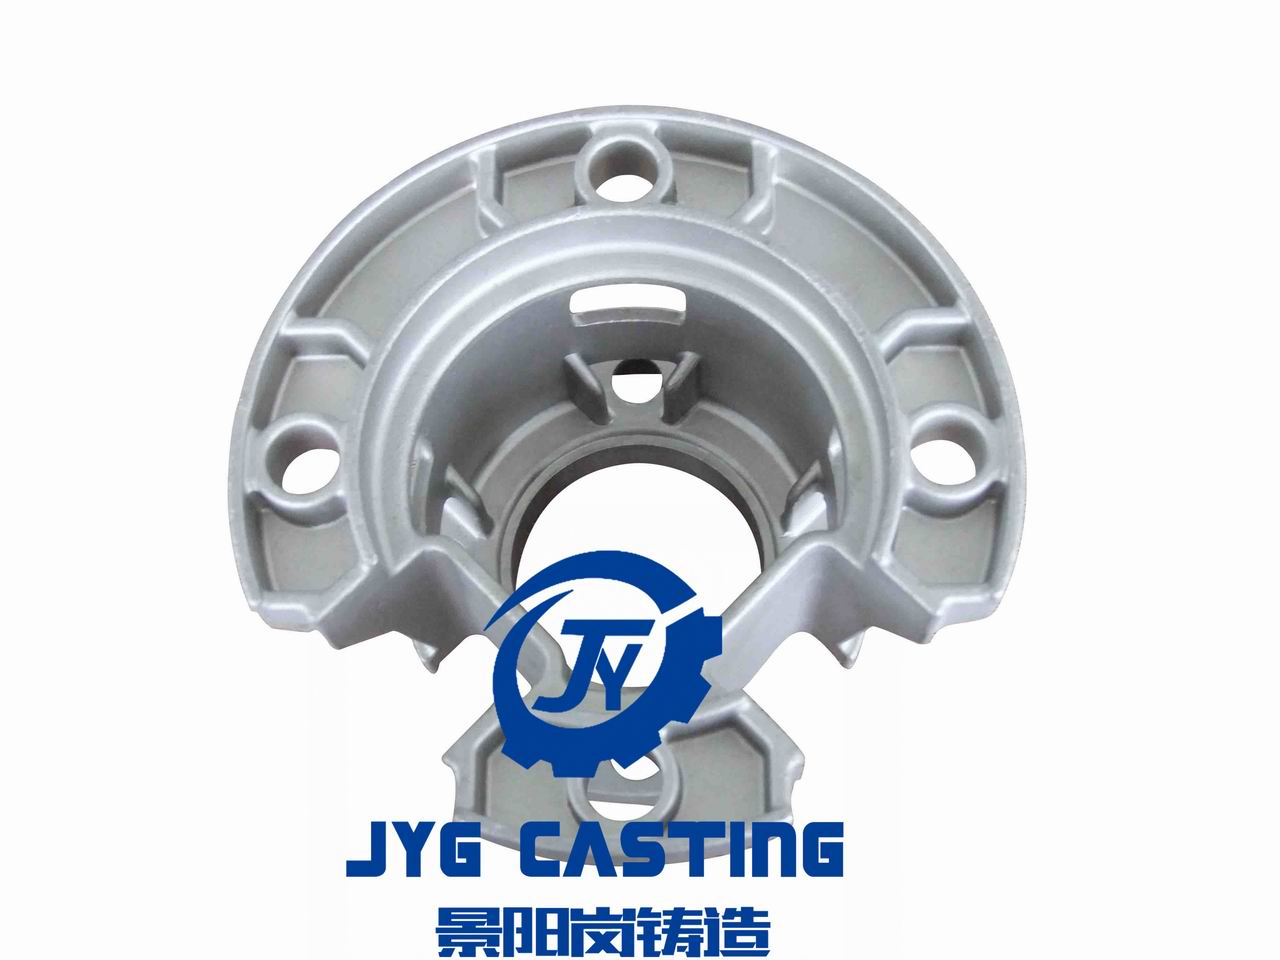 JYG Casting Customizes Precision Casting Auto Parts